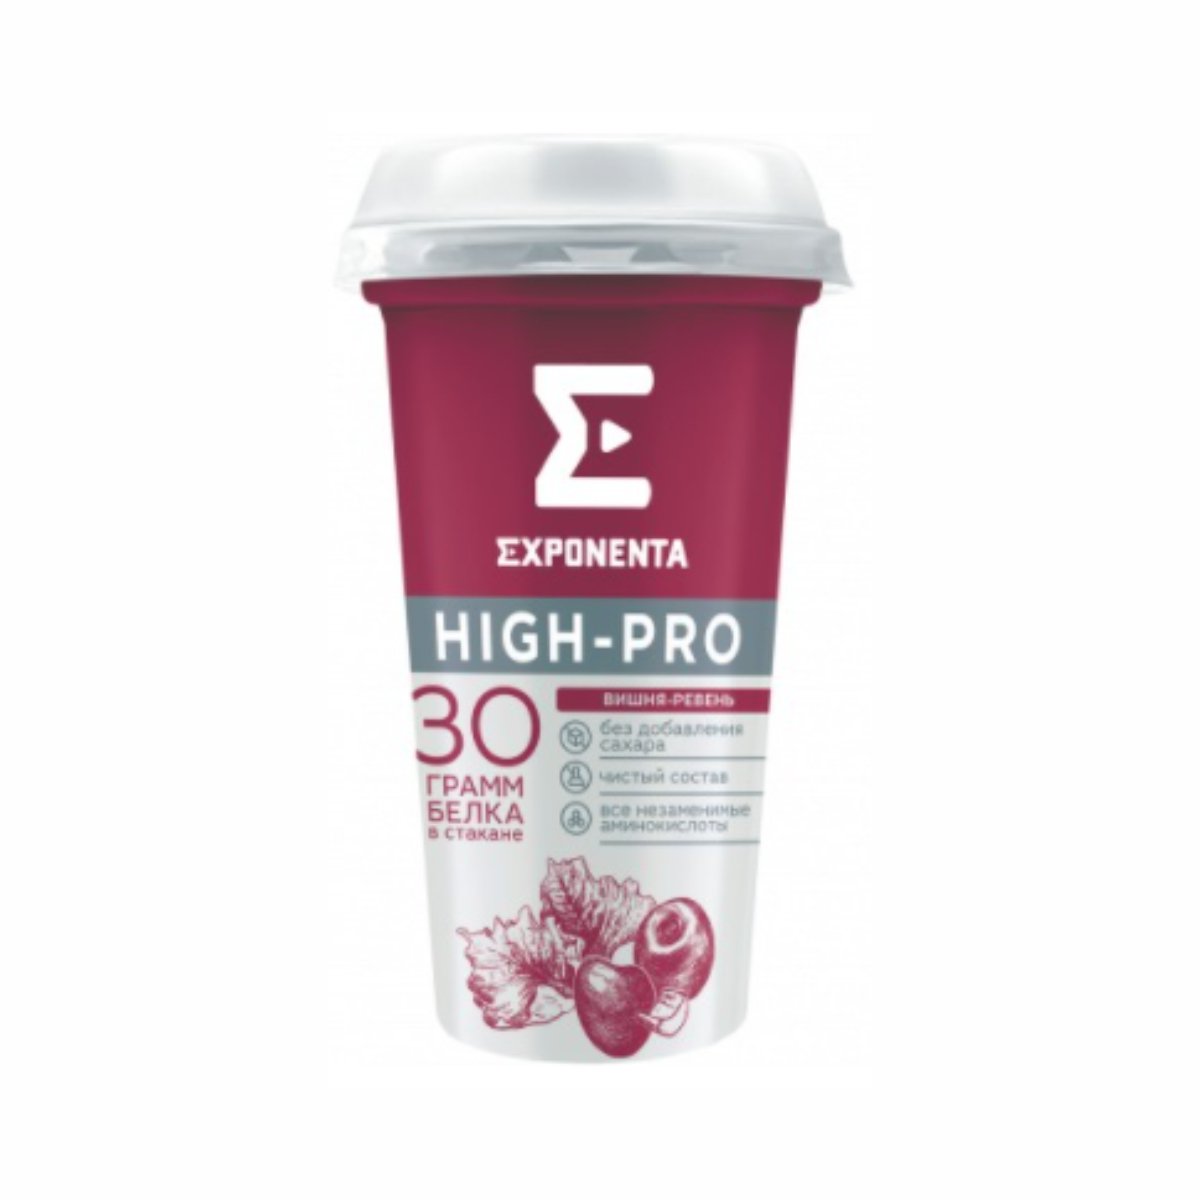 Exponenta bio skyr купить. Напиток Exponenta High Pro. Напиток Exponenta High-Pro кисломолочный Кокос-миндаль. Напиток кисломолочный обезжиренный Exponenta High-Pro. Exponenta High-Pro состав.